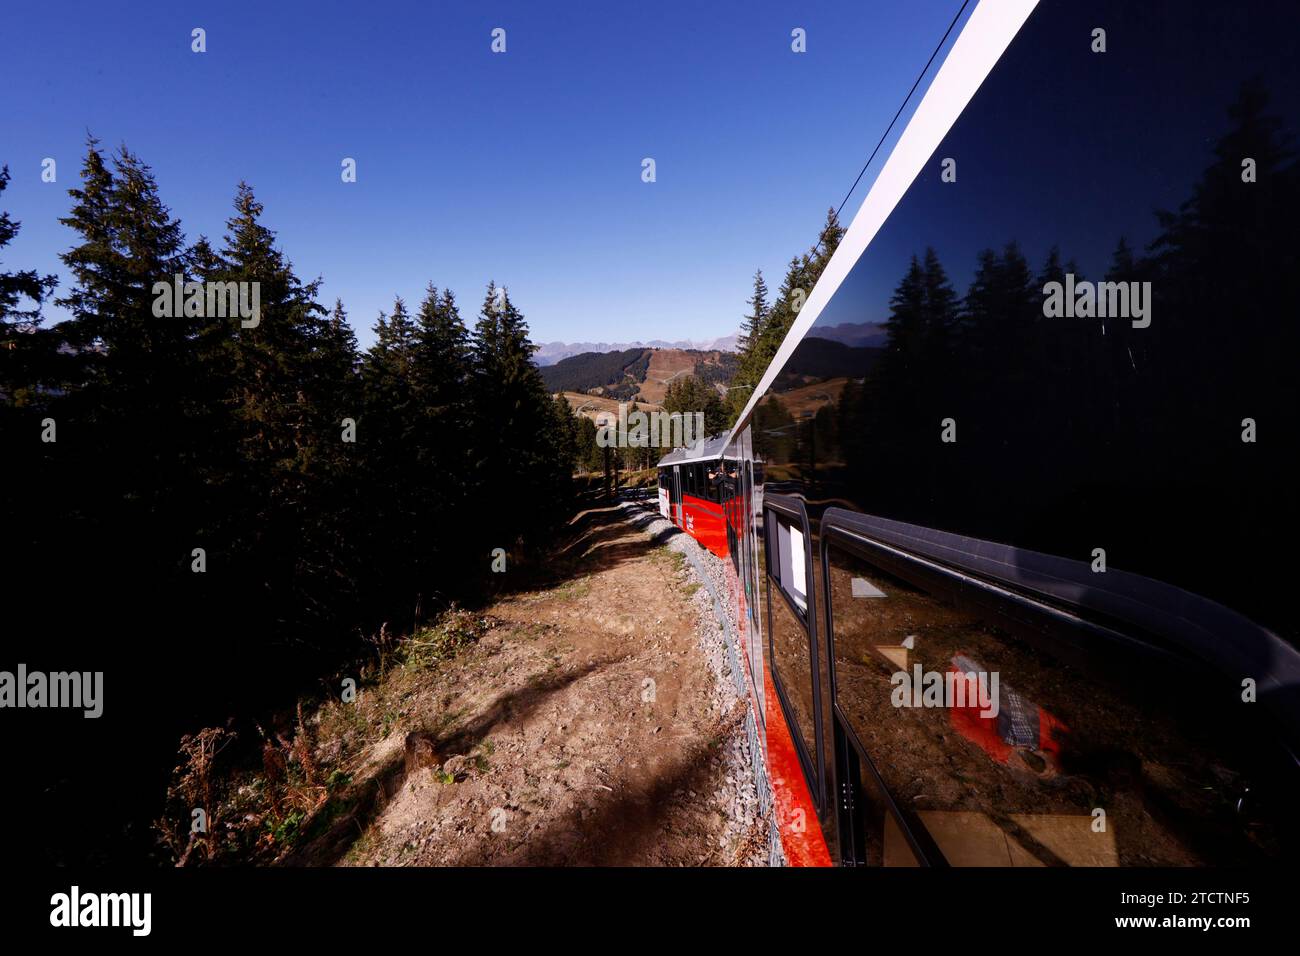 Alpi francesi. La funivia del Monte bianco (TMB) è la linea ferroviaria di montagna più alta della Francia. Capolinea a 2372 m. Saint Gervais. Francia. Foto Stock